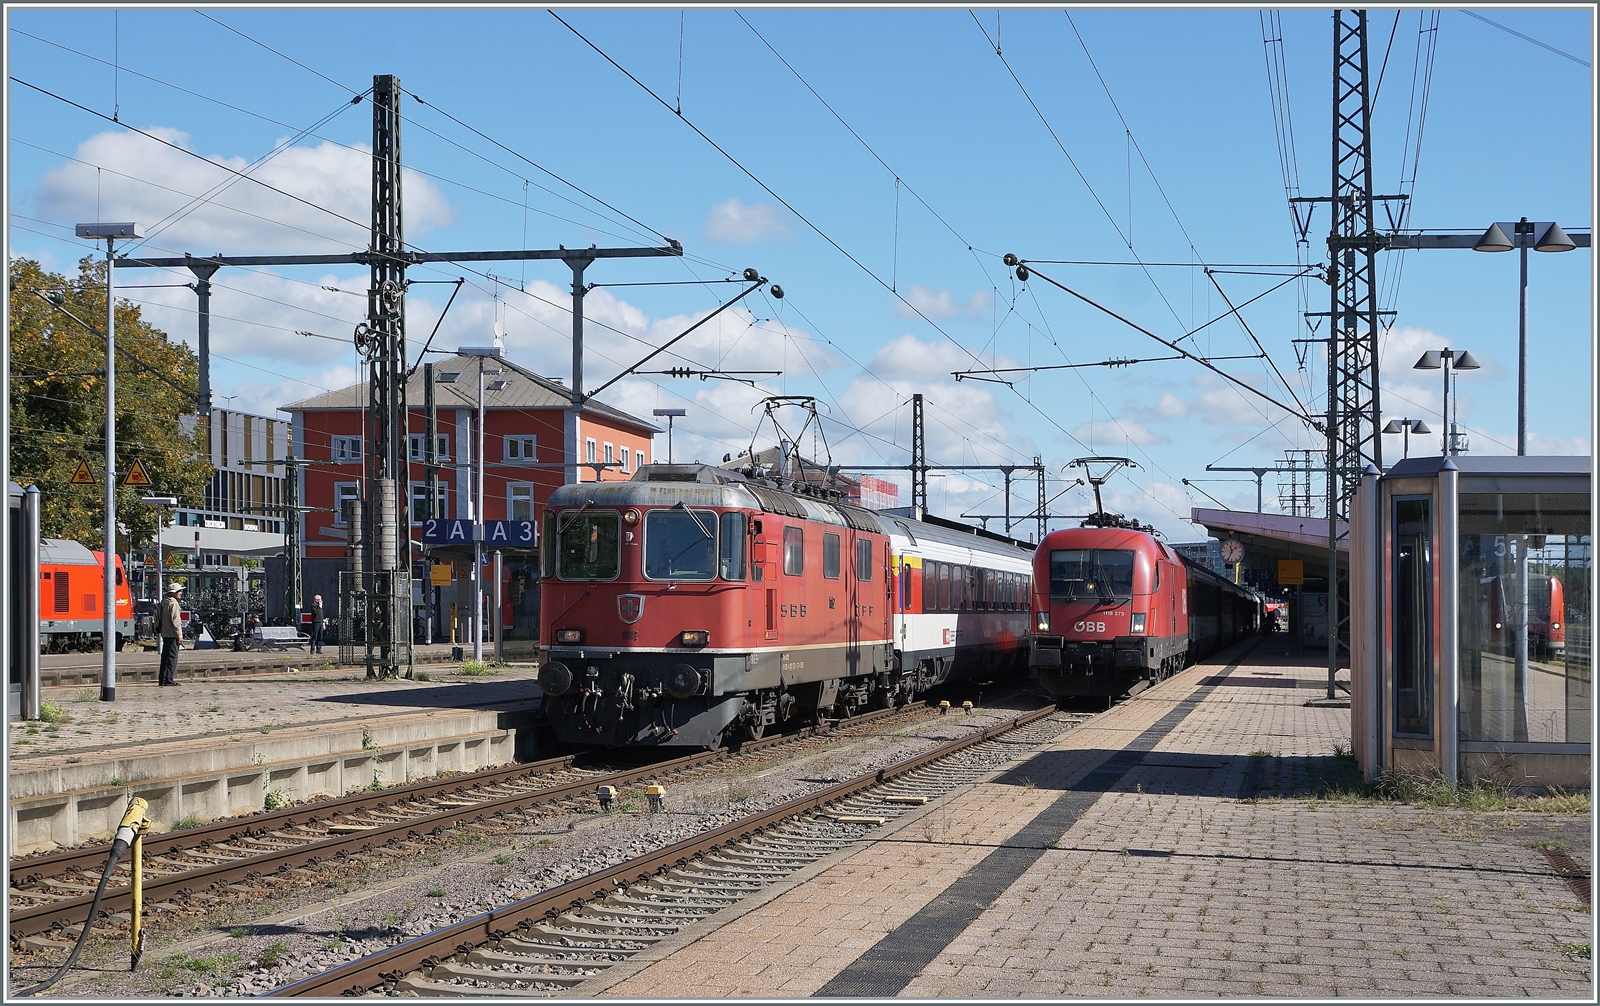 Die SBB Re 4/4 II 11152 mit ihrem IC nach Zürich und die ÖBB 1116 273 mit ihrem IC nach Stuttgart warten in Singen auf die Abfahrt.

19. September 2022